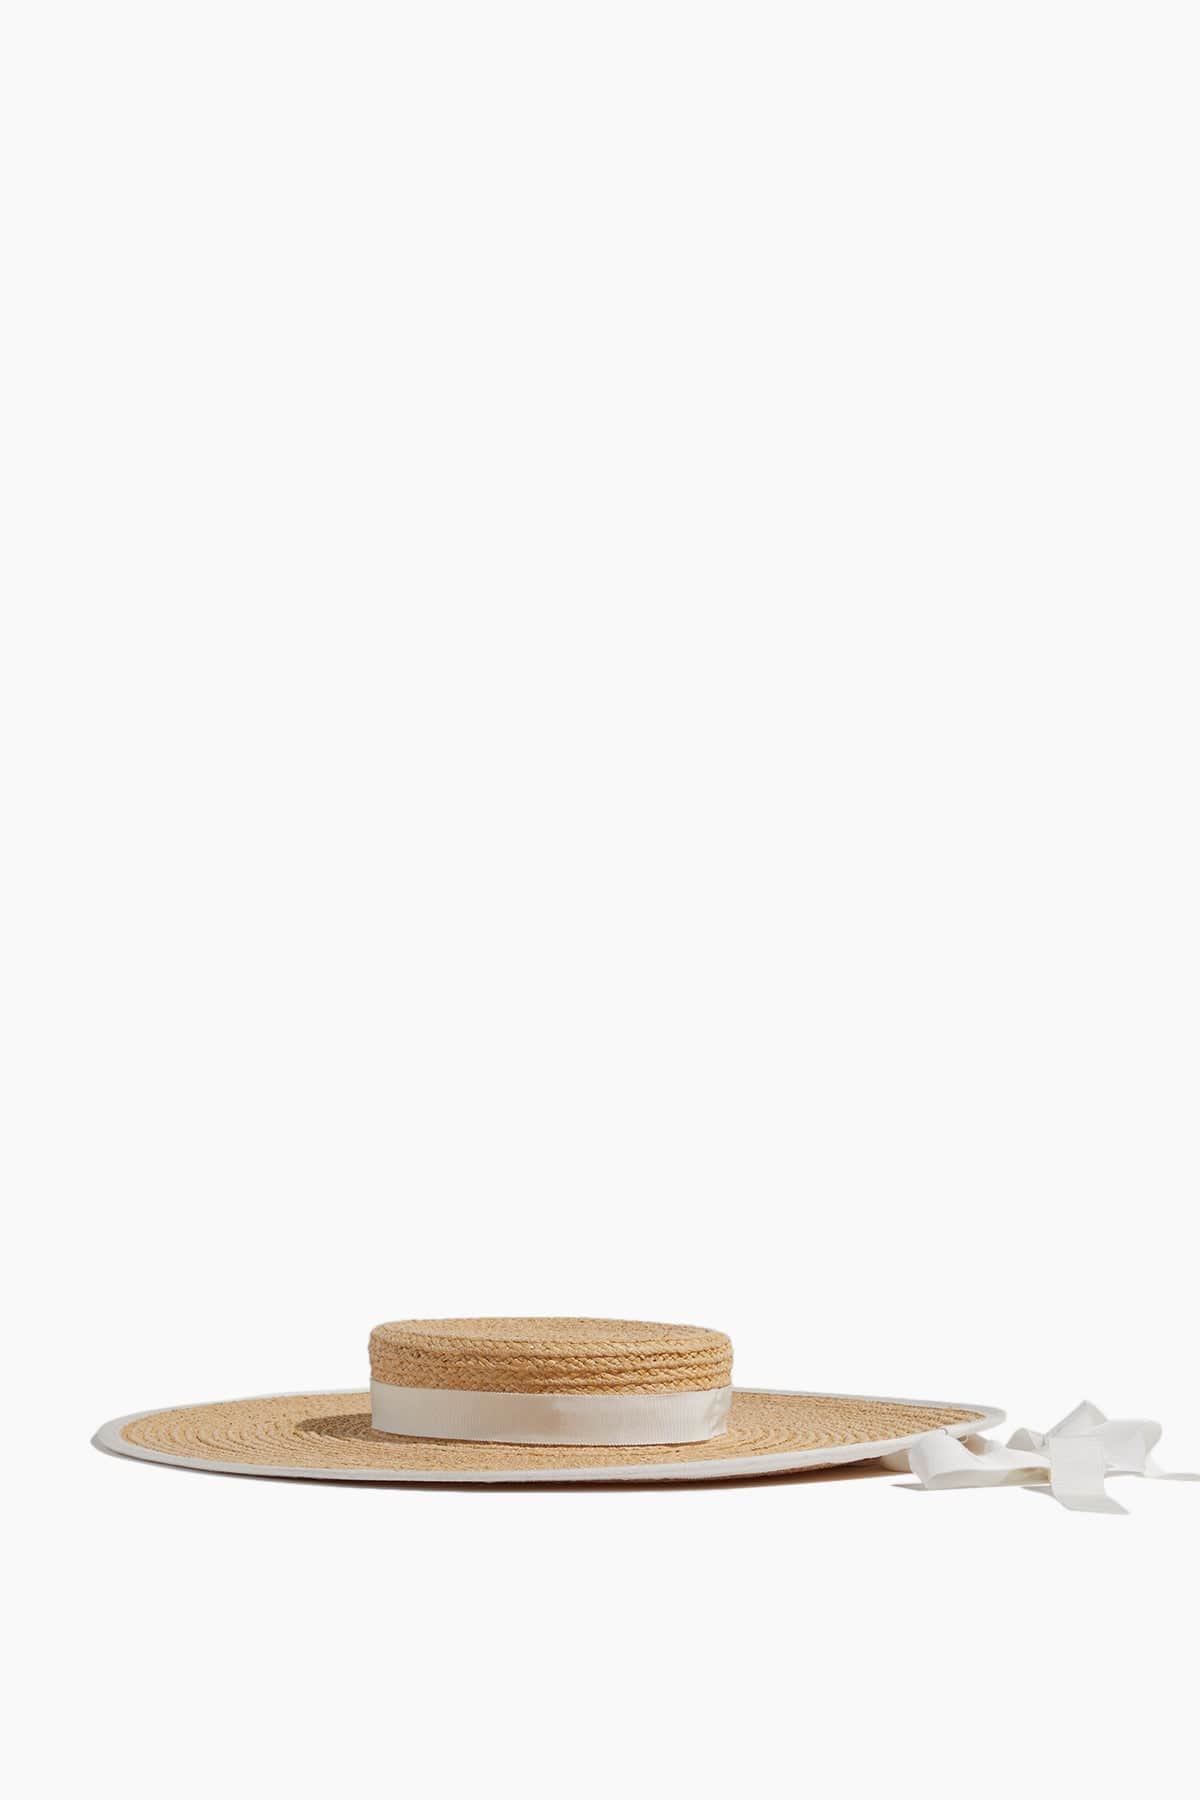 Gigi Burris Hats Claiborne Hat in Natural/Ivory Gigi Burris Claiborne Hat in Natural/Ivory